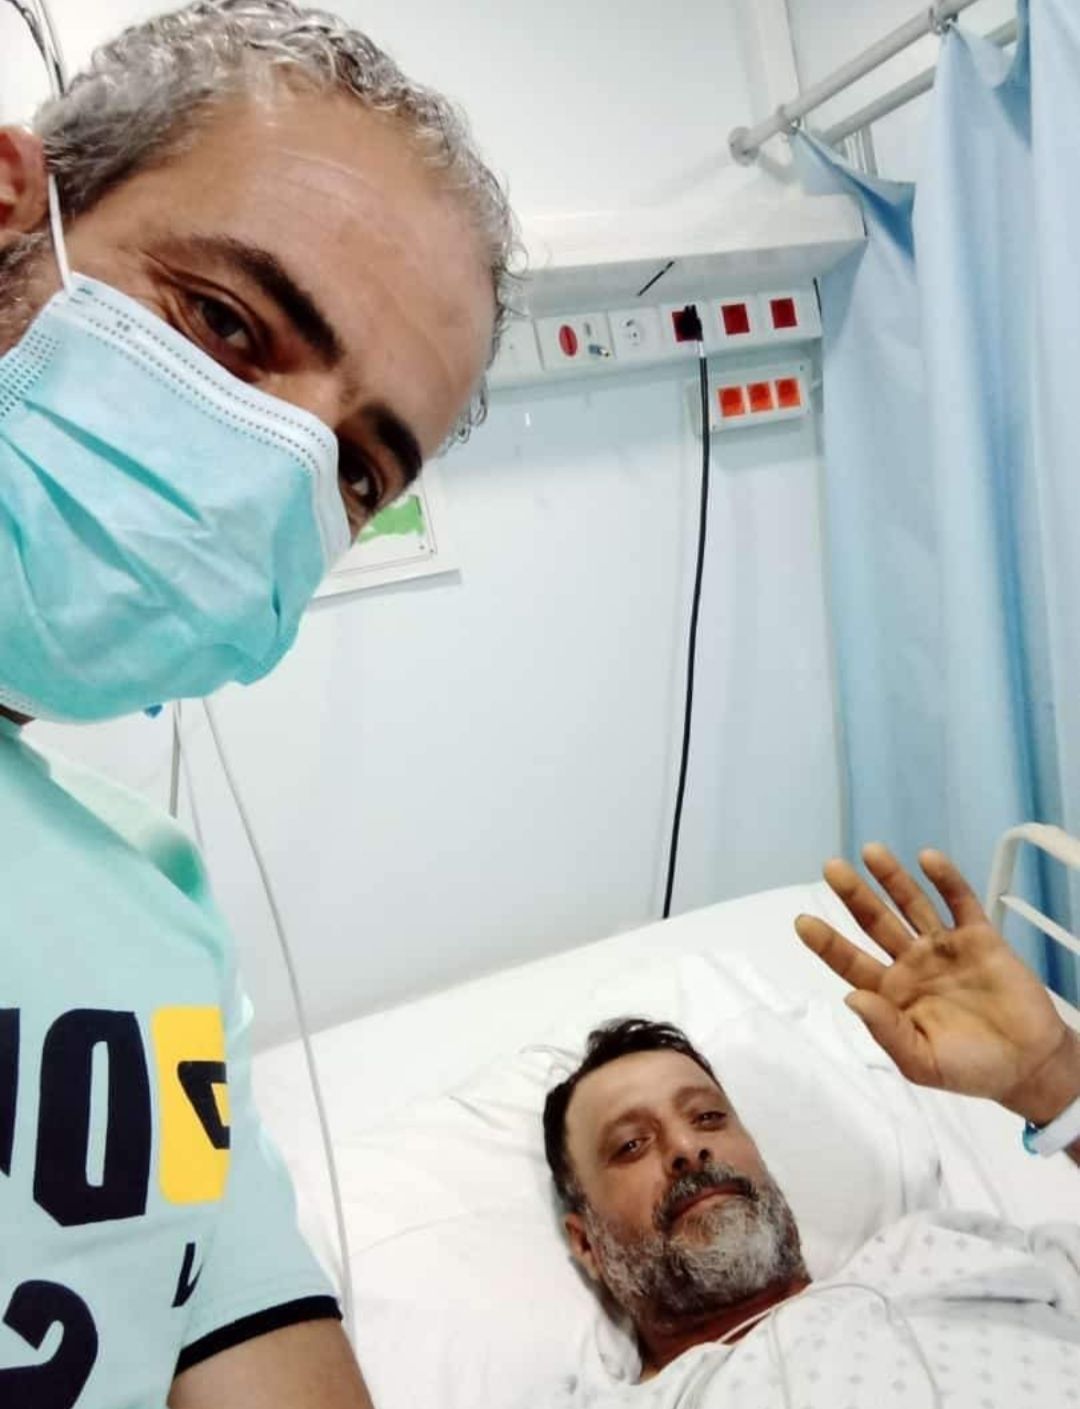 فيديو للاخ عباس دهيني من المستشفى ألرسول ألاعظم يتحدث ويطمن عن صحته.